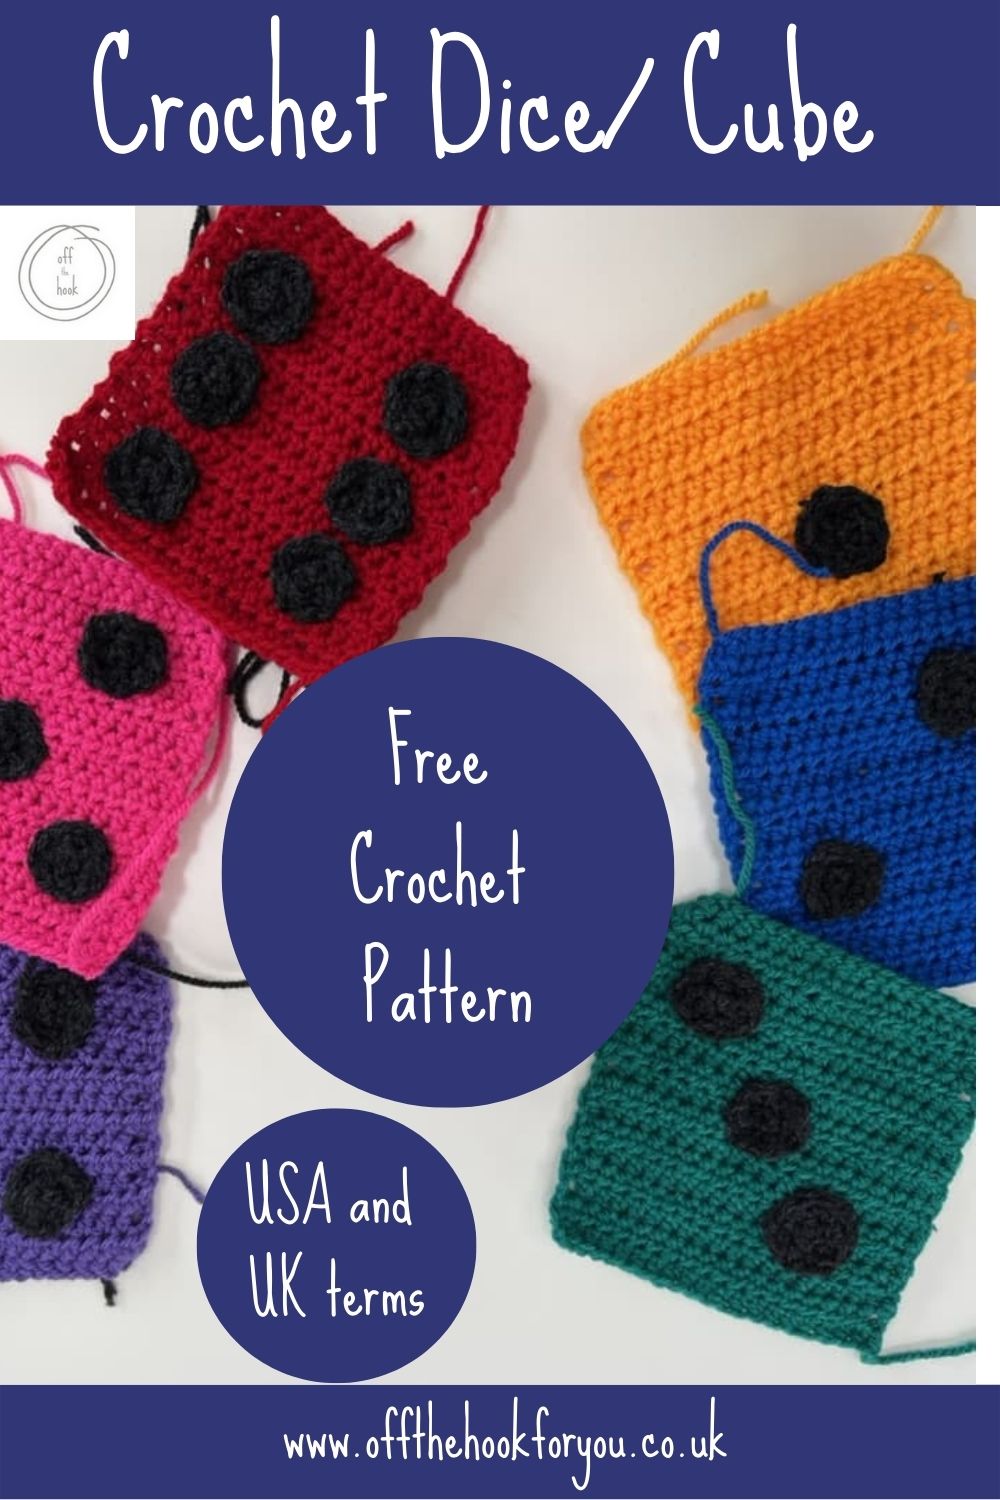 crochet dice pattern free